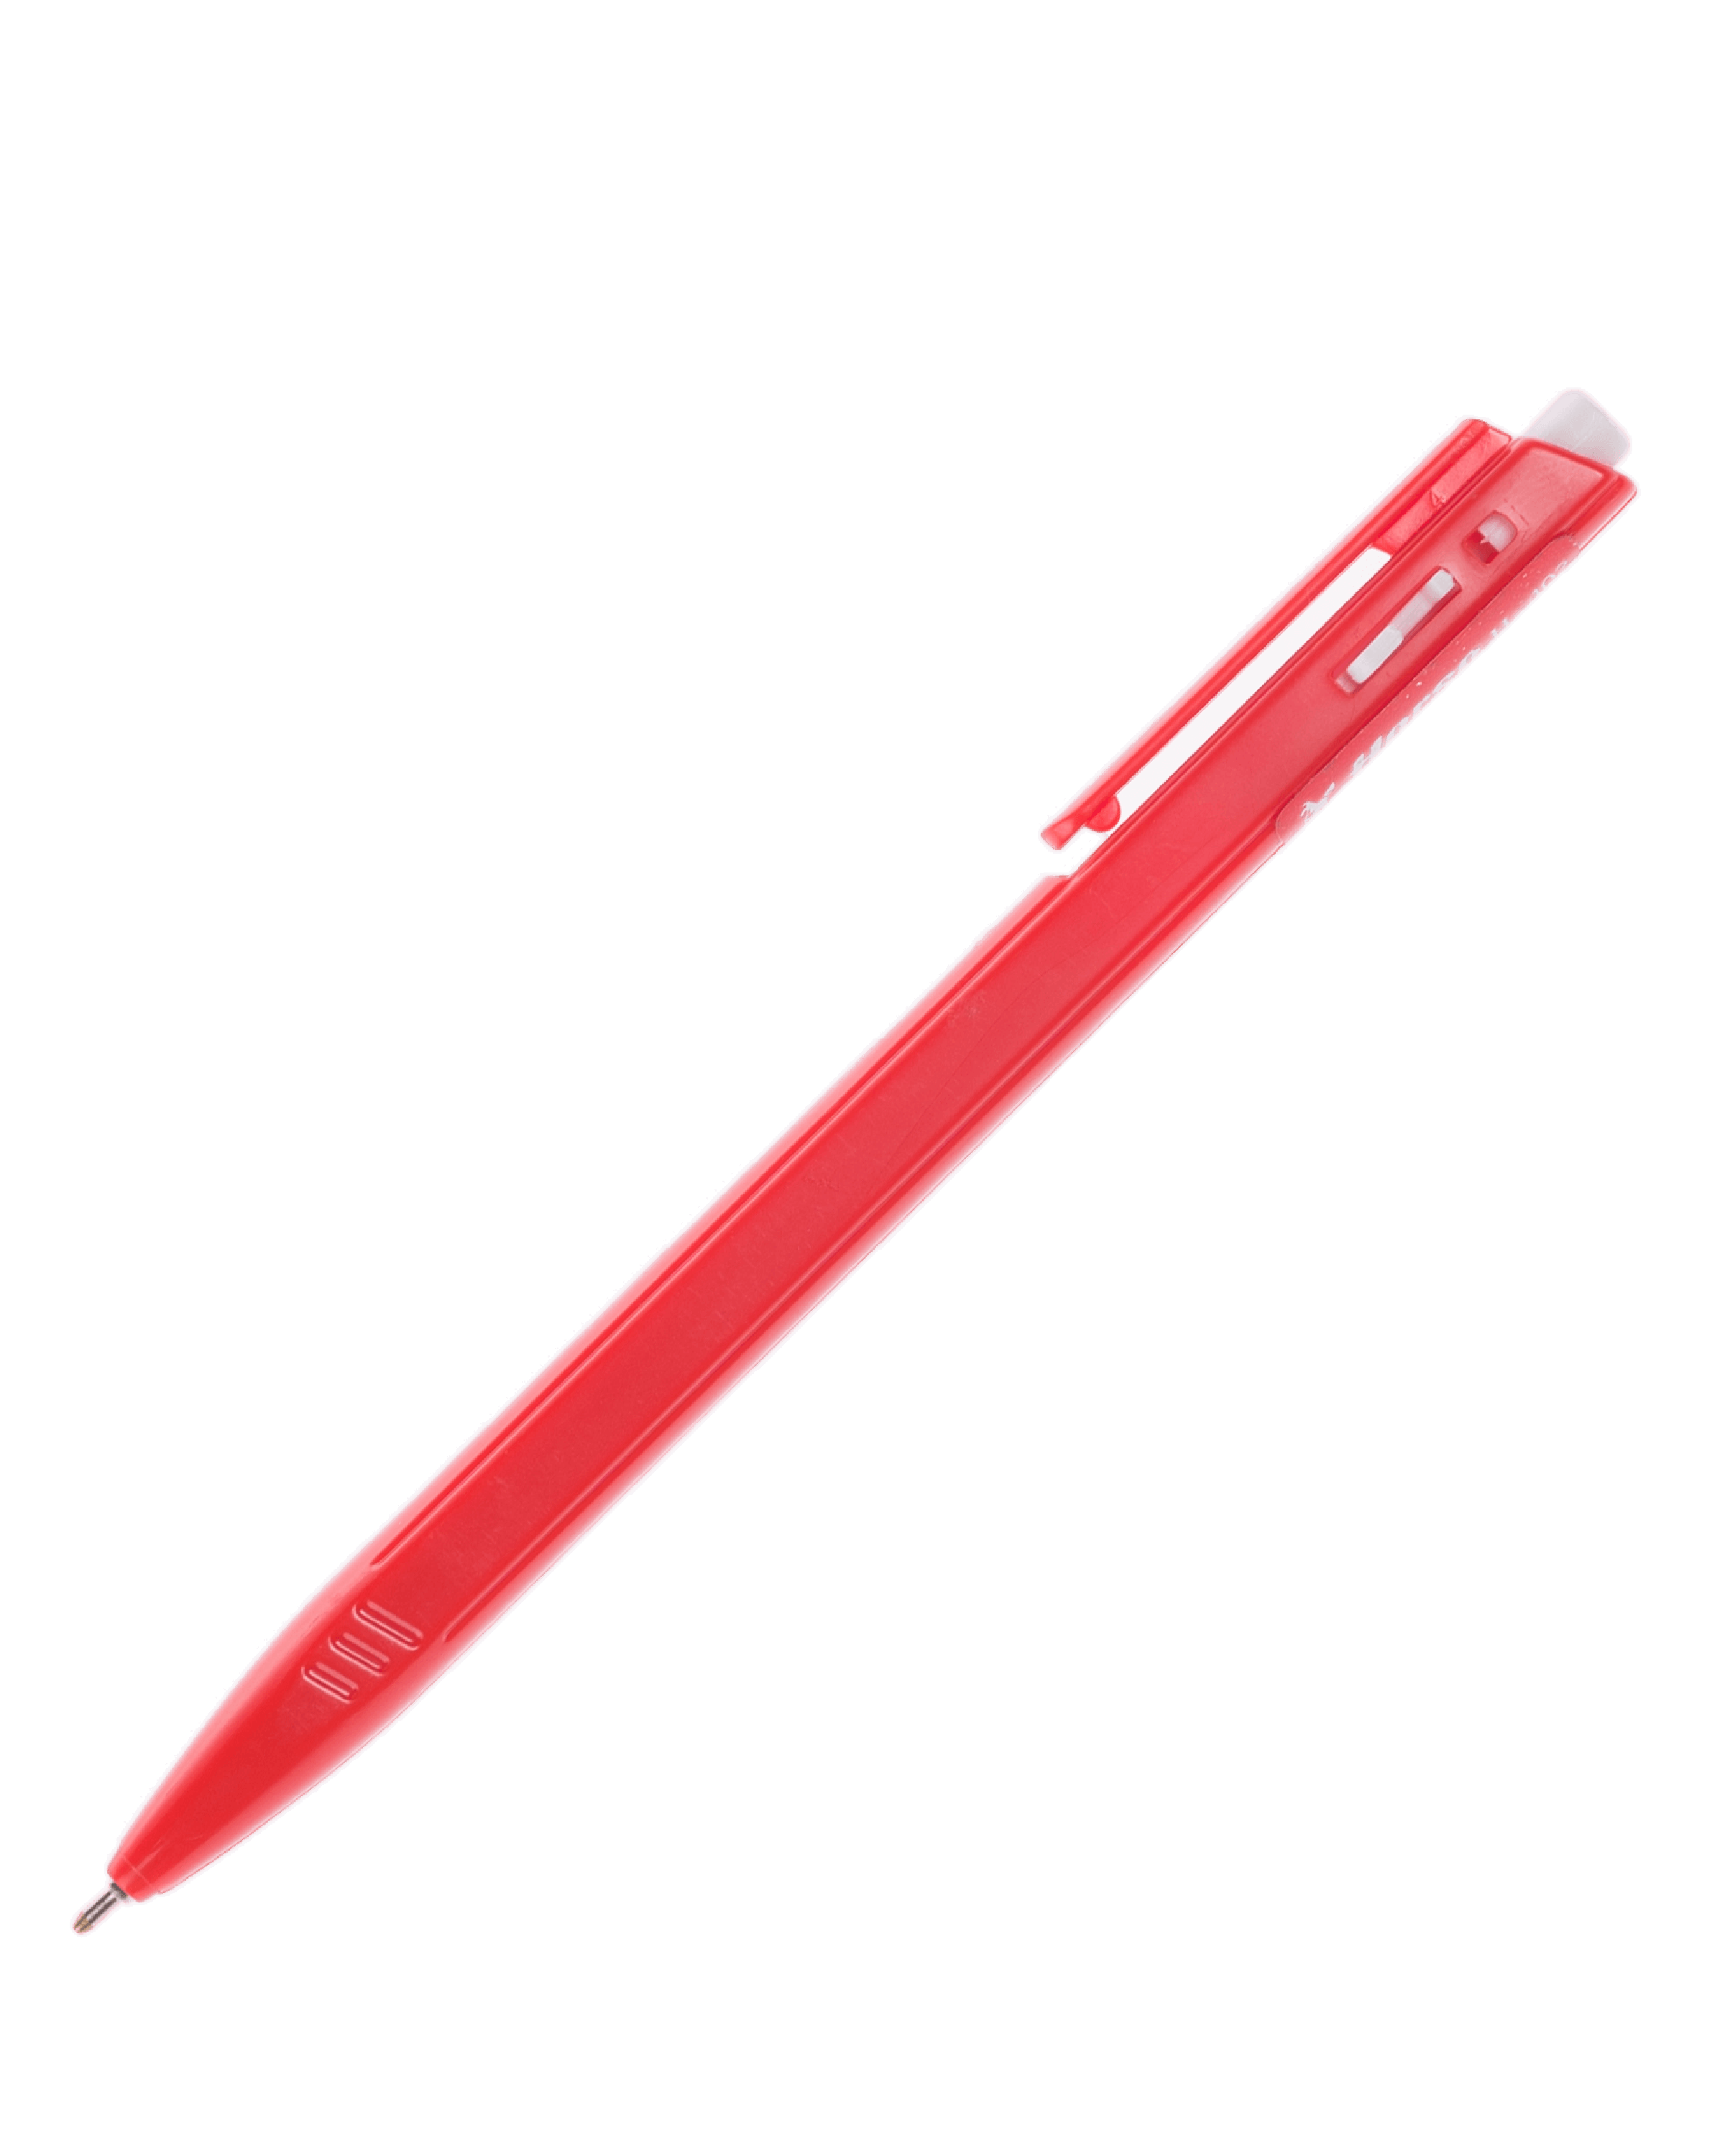 ปากกาลูกลื่นแบบกด ตราม้า H-402 สีแดง 0.7 มม.